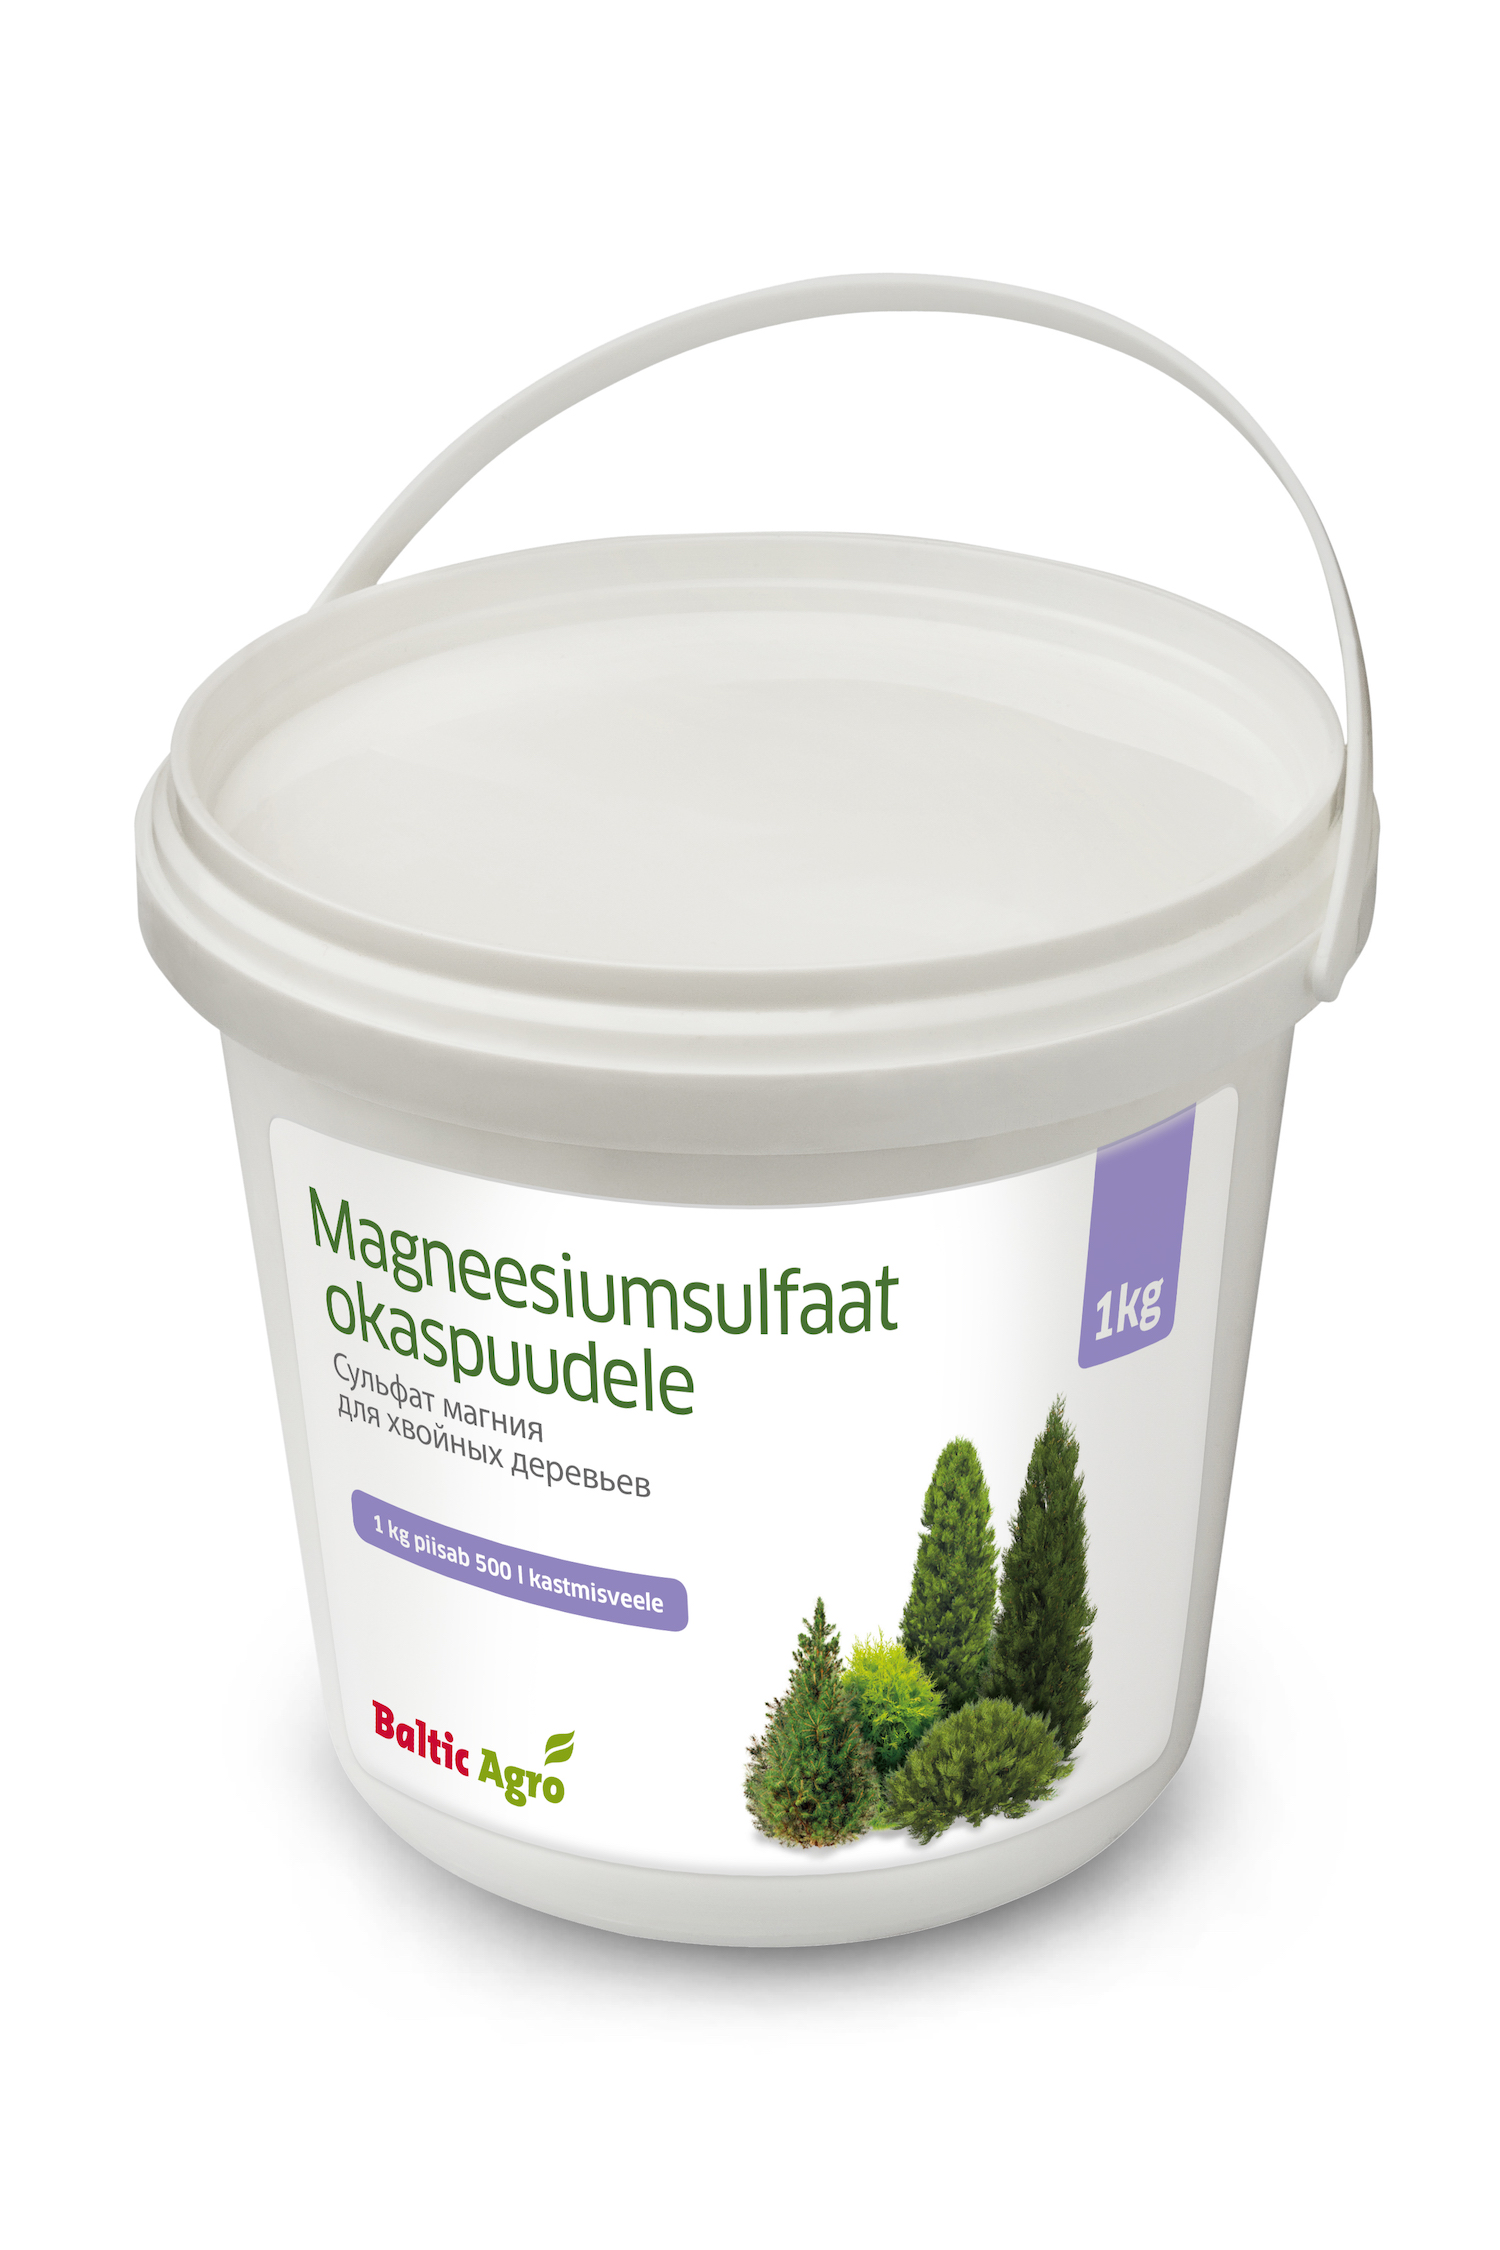  Magneesiumsulfaat okaspuudele 1 kg Baltic Agro 